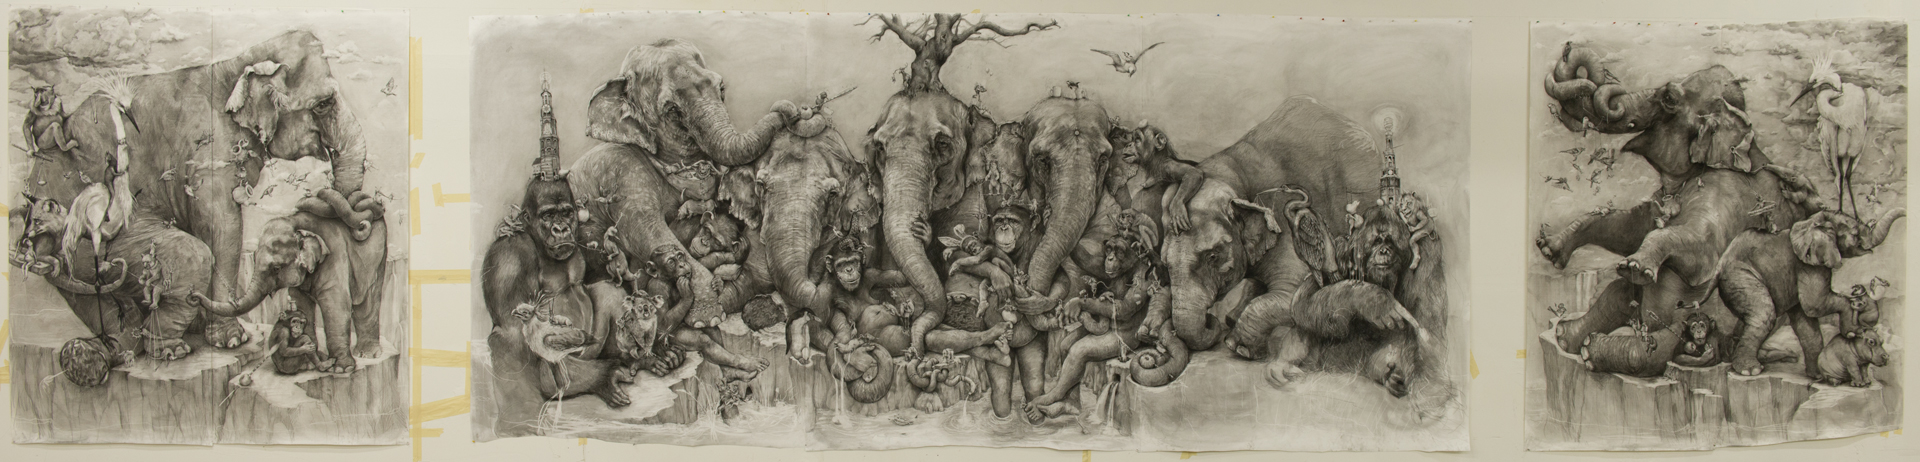 Adonna Khare Artist – Mural Fresque Elephants